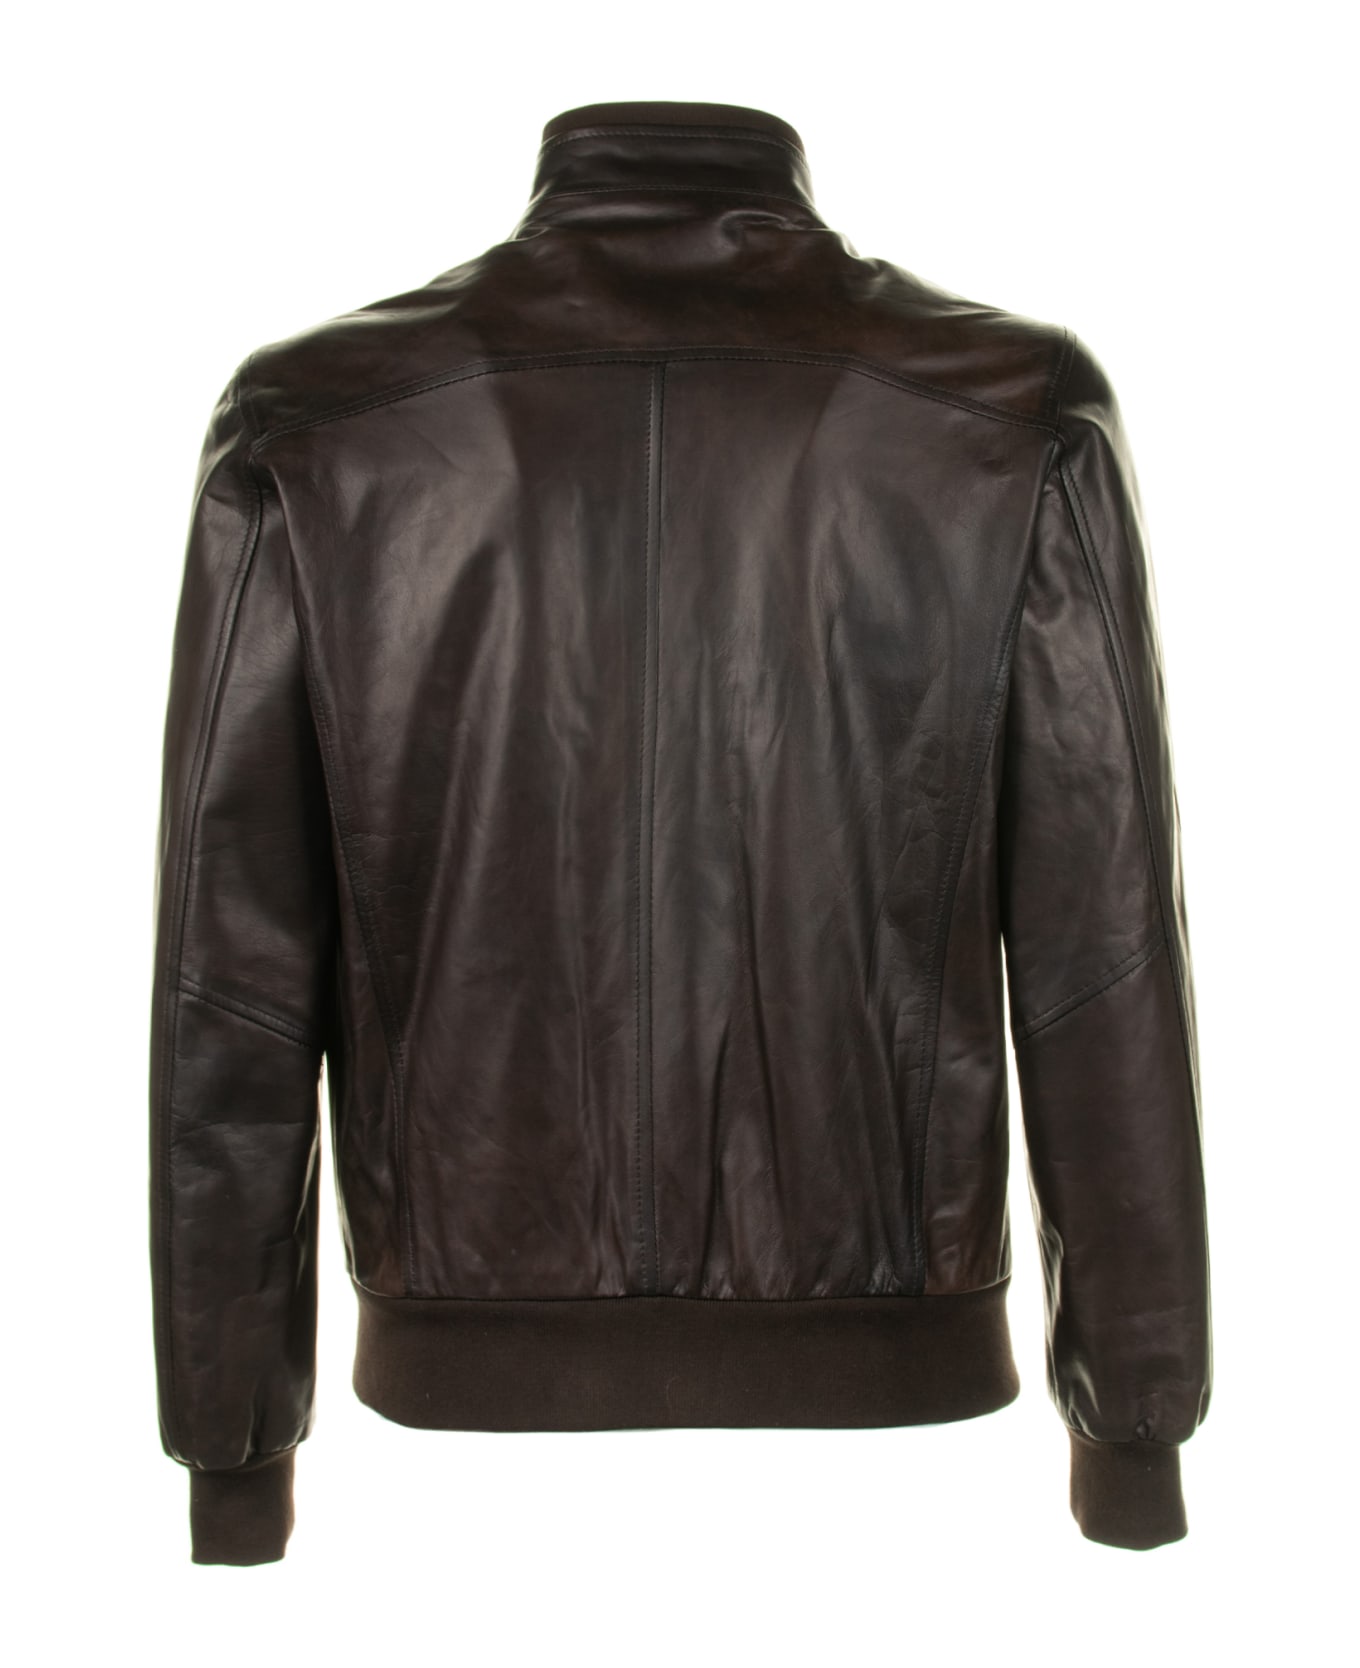 Barba Napoli Leather Jacket With Zip - MARRONE